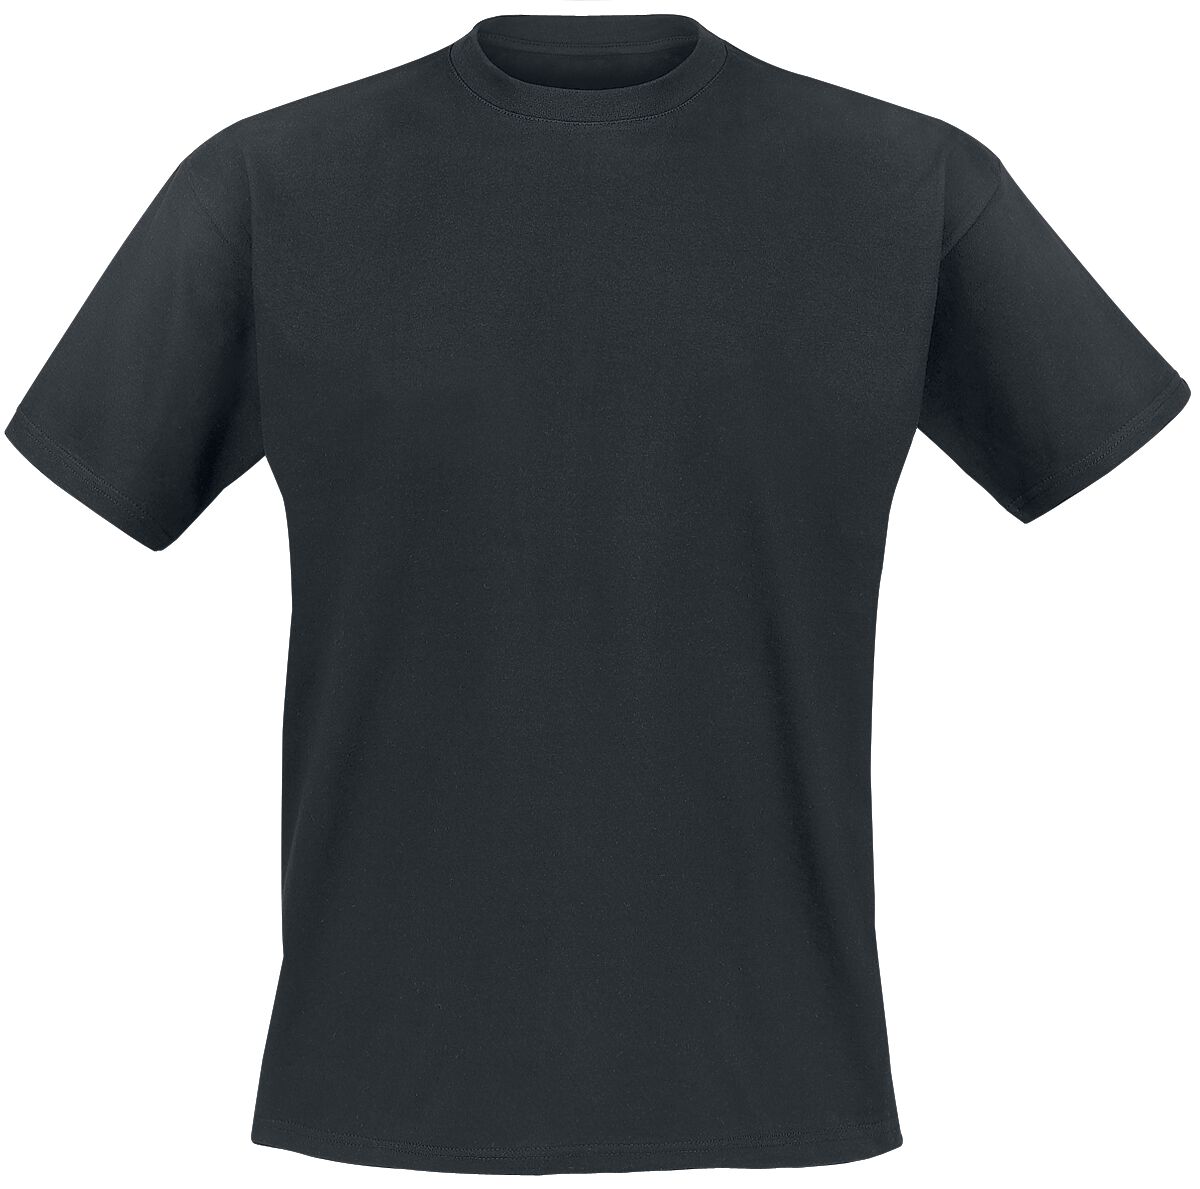 genesis t-shirt - mad hatter - s bis xxl - fÃ¼r mÃ¤nner - grÃ¶ÃŸe xxl - - emp exklusives merchandise! schwarz